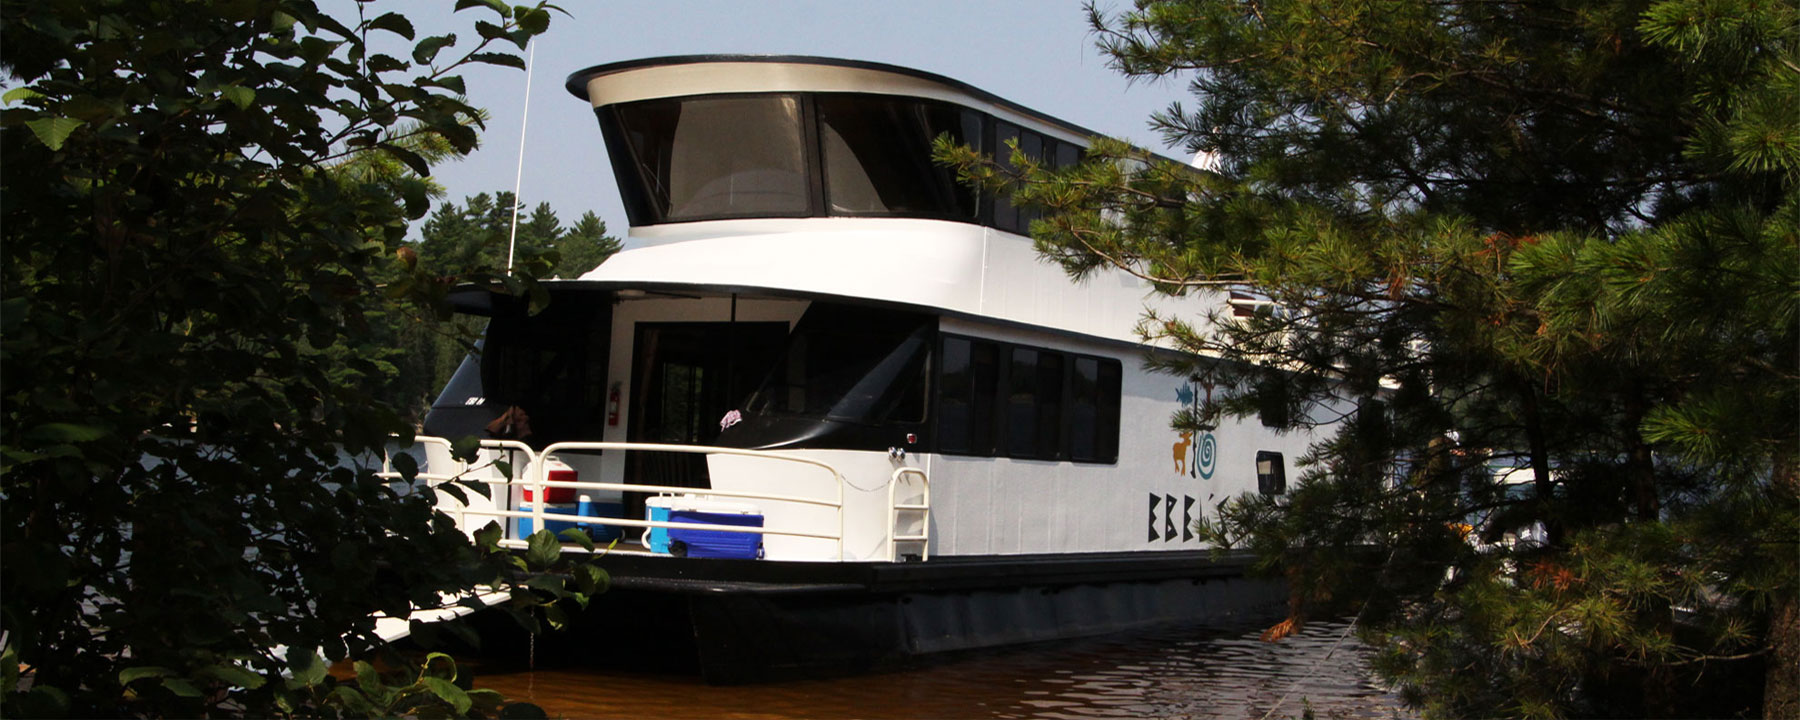 65-houseboat-1